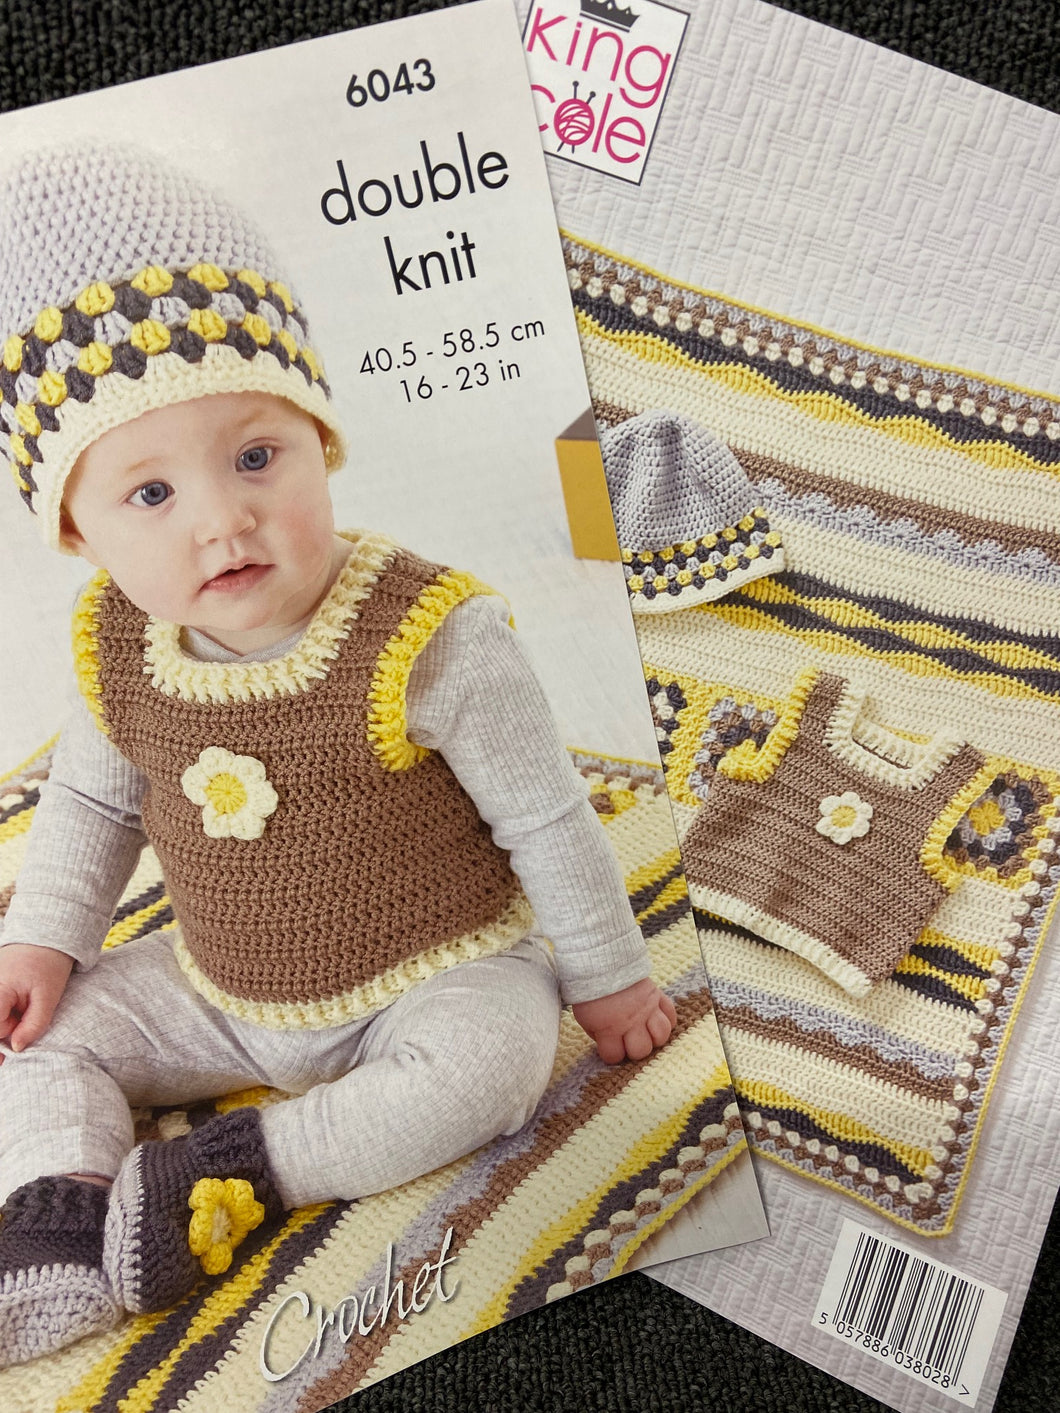 King Cole Baby Hat Tank Top Booties & Blanket Double Knit DK Crochet Pattern 6043